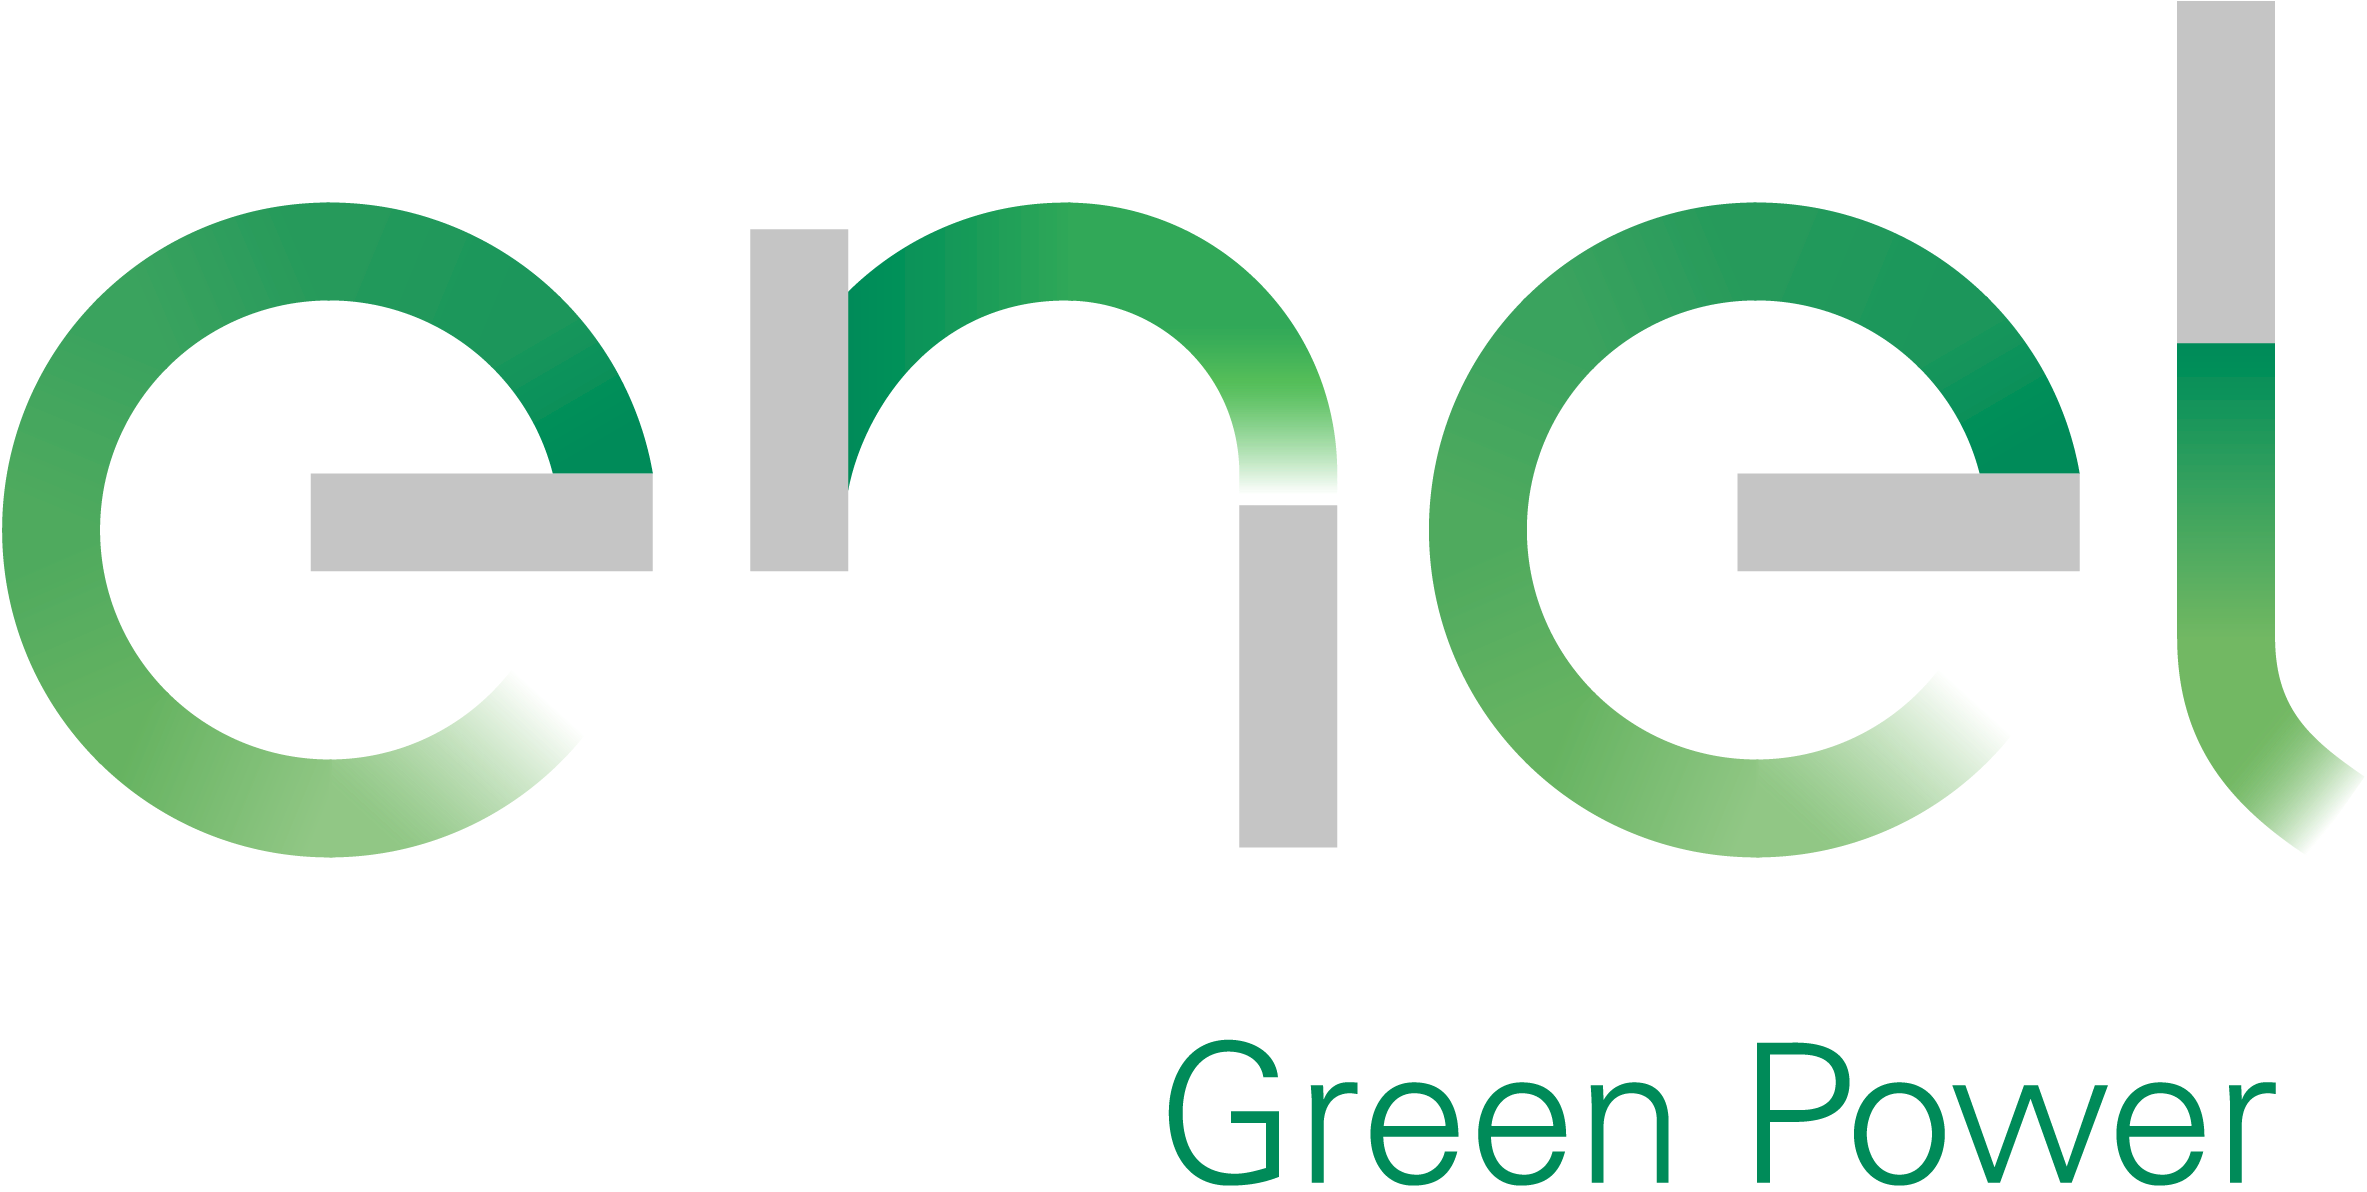 Enel Green Power Centroamérica